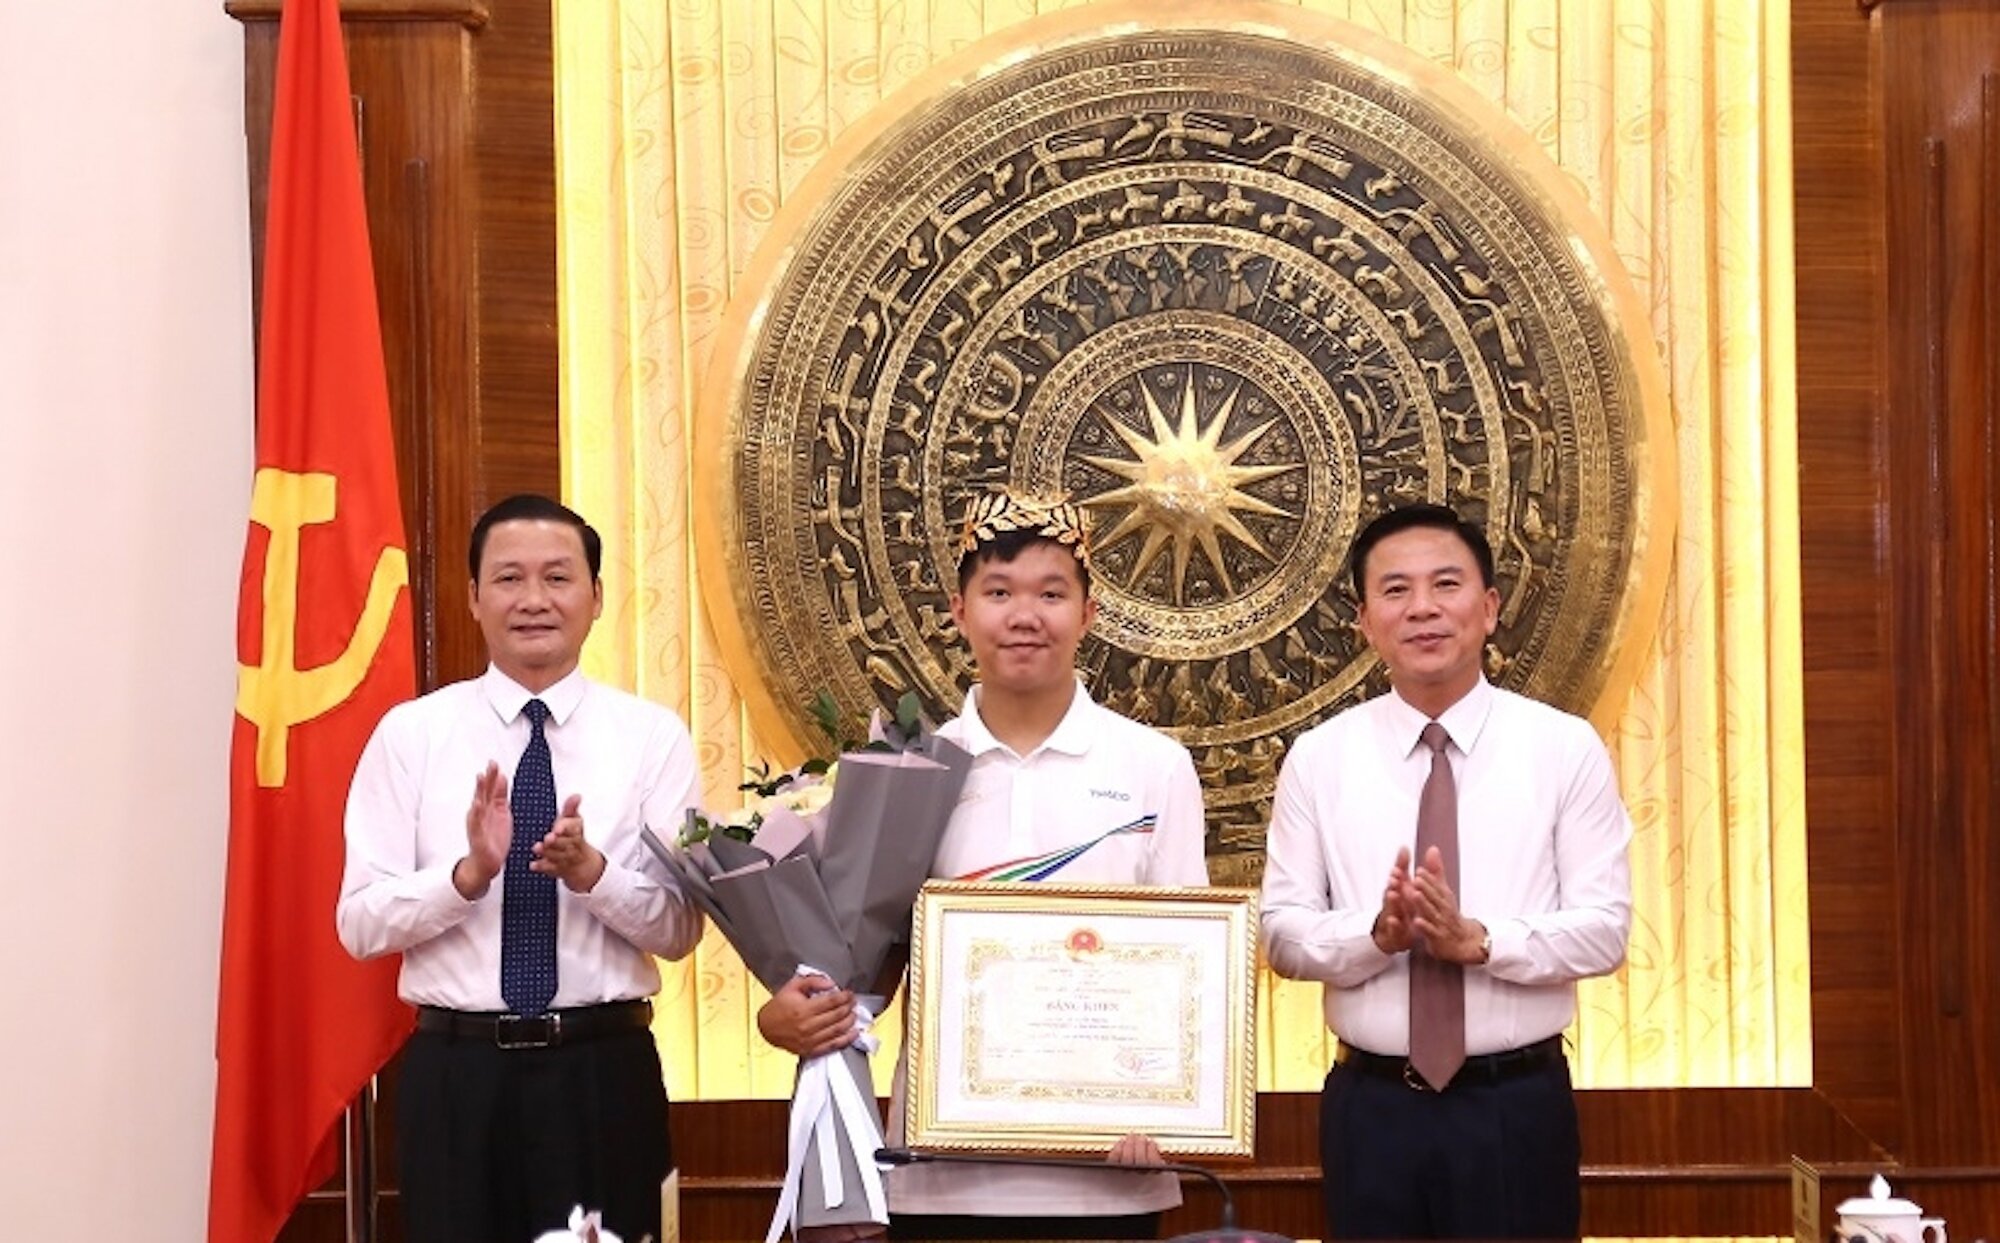 Bí thư Tỉnh ủy Thanh Hoá Đỗ Trọng Hưng (phải) và Chủ tịch UBND tỉnh Đỗ Minh Tuấn (trái) trao bằng khen cho Lê Xuân Mạnh.